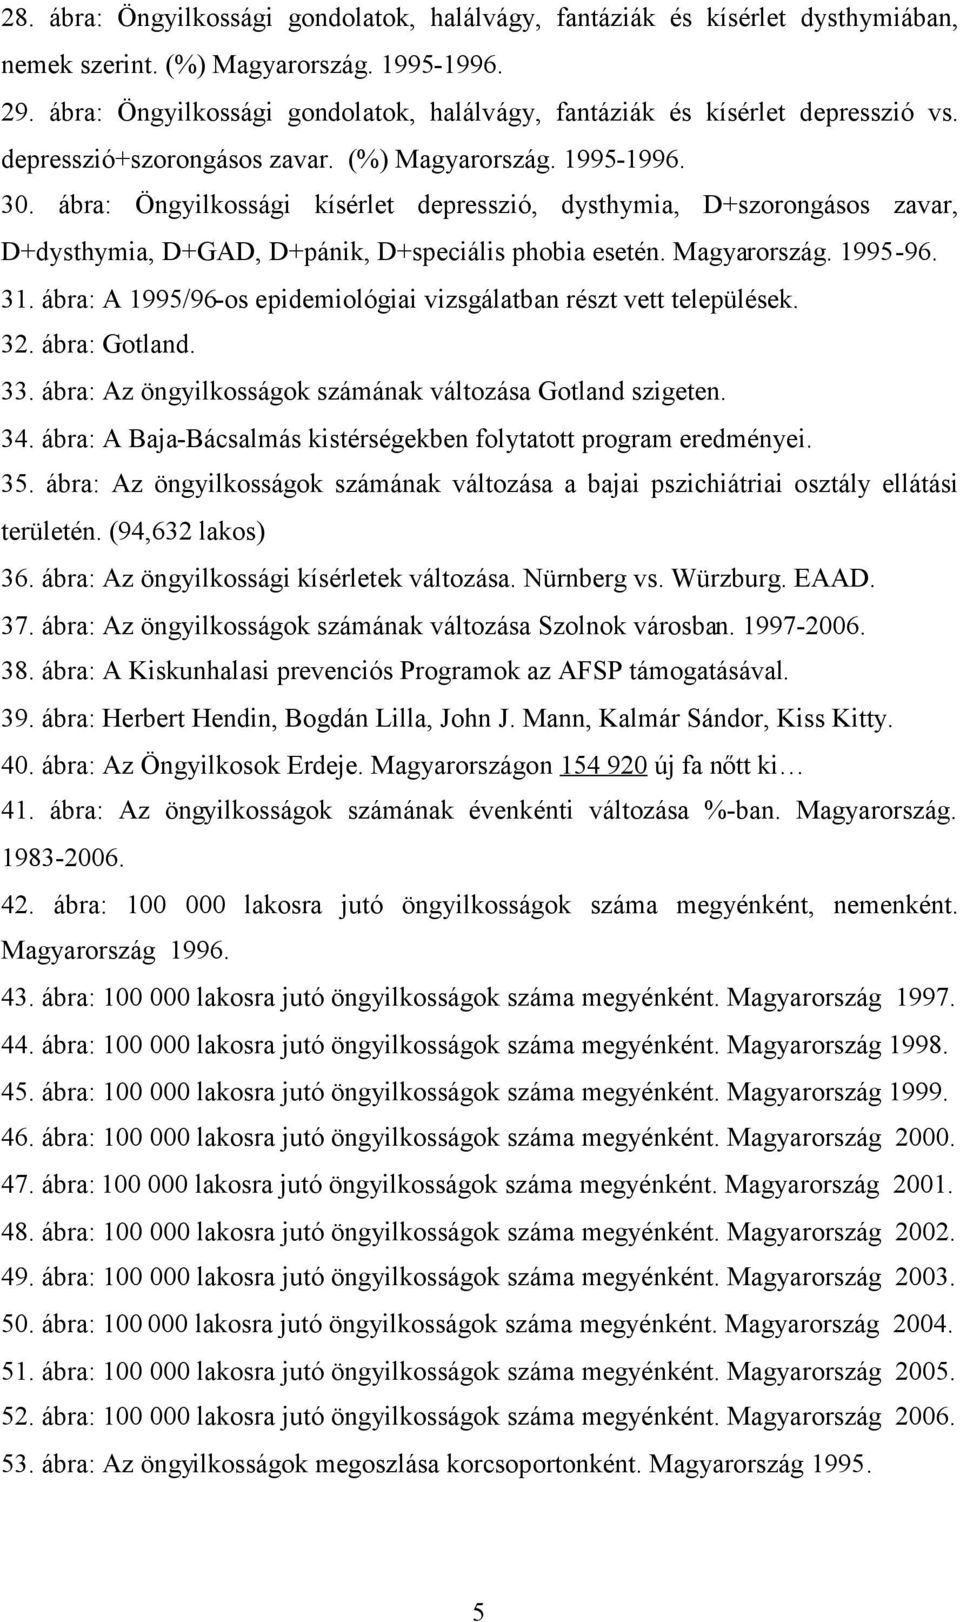 ábra: Öngyilkossági kísérlet depresszió, dysthymia, D+szorongásos zavar, D+dysthymia, D+GAD, D+pánik, D+speciális phobia esetén. Magyarország. 1995-96. 31.